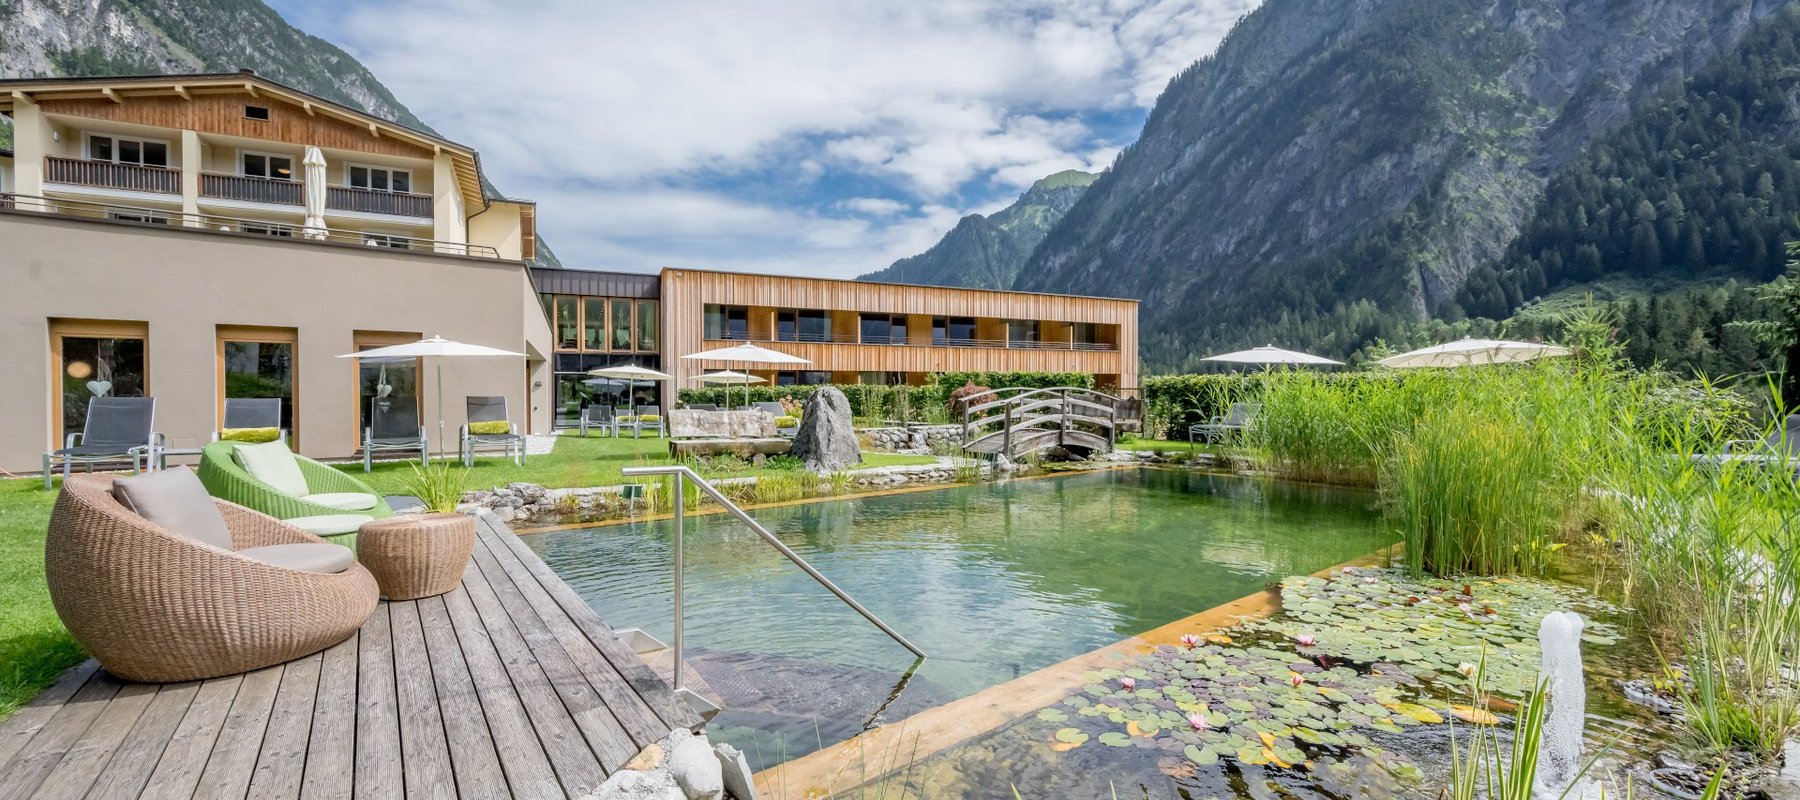 Hotel mit Naturbadeteich und gemütlichen Gartenmöbeln in den Bergen im Sommer